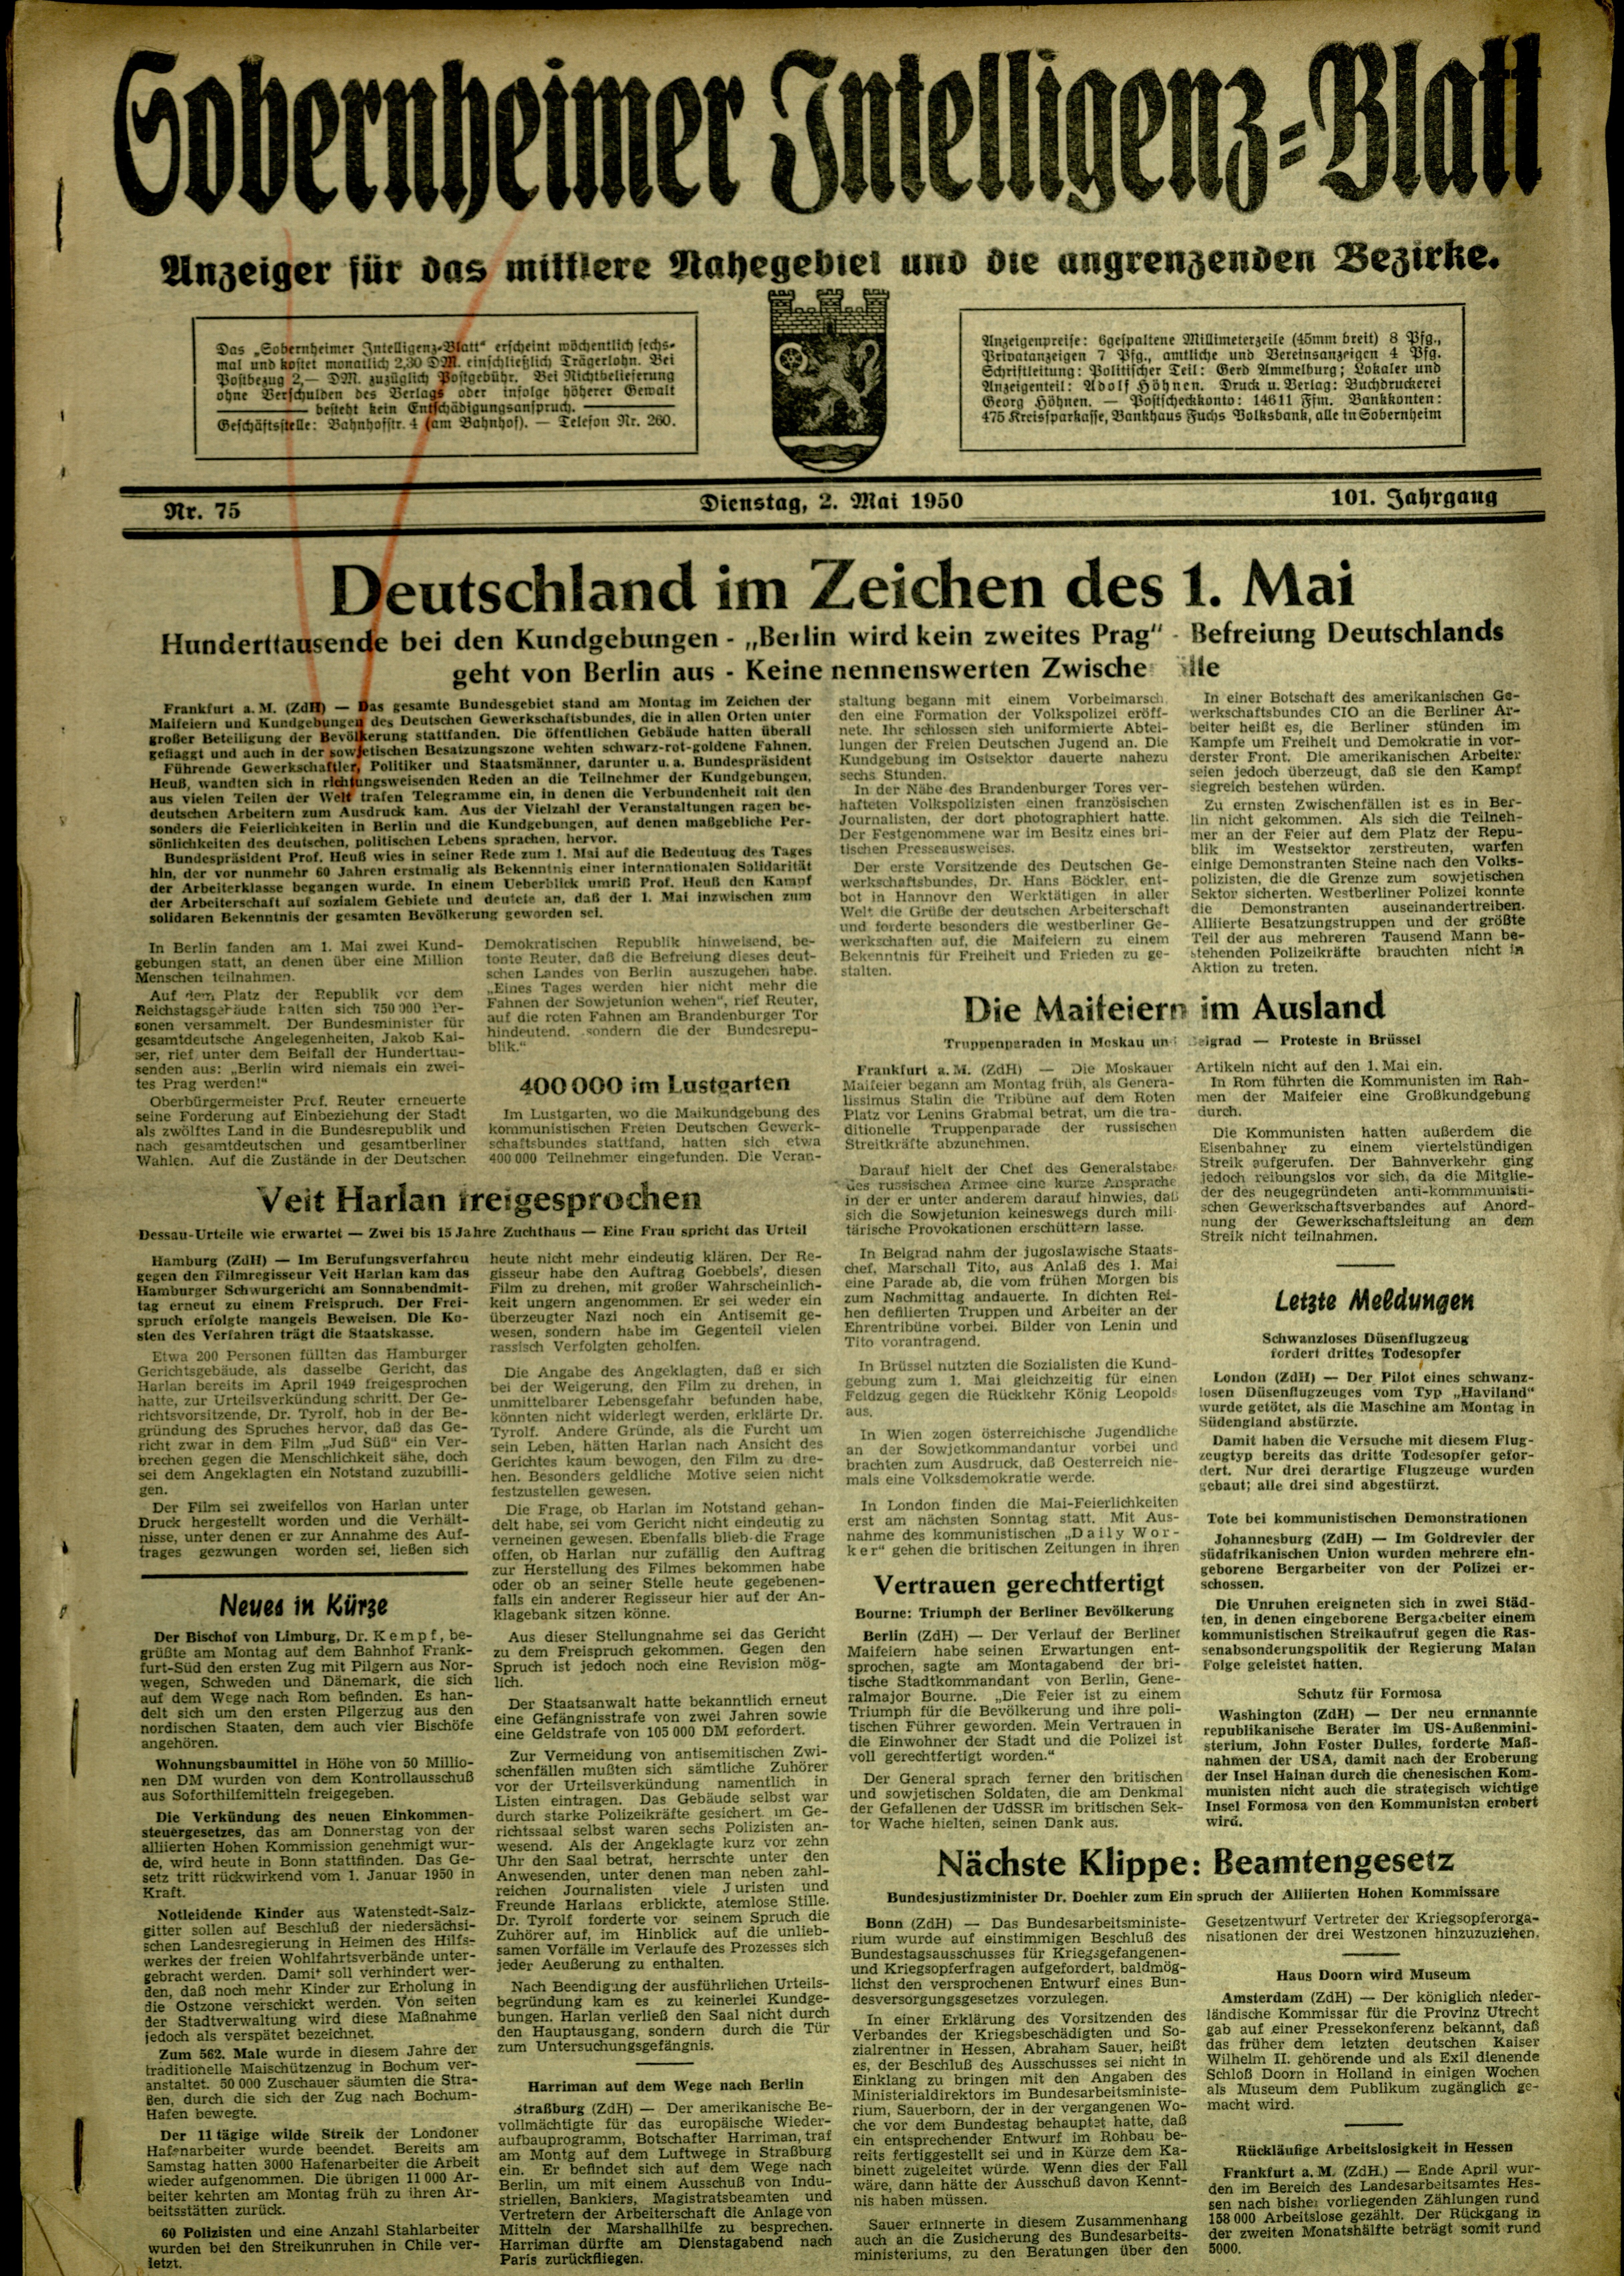 Zeitung: Sobernheimer Intelligenzblatt; Mai 1950, Jg. 82 Nr. 75 (Heimatmuseum Bad Sobernheim CC BY-NC-SA)